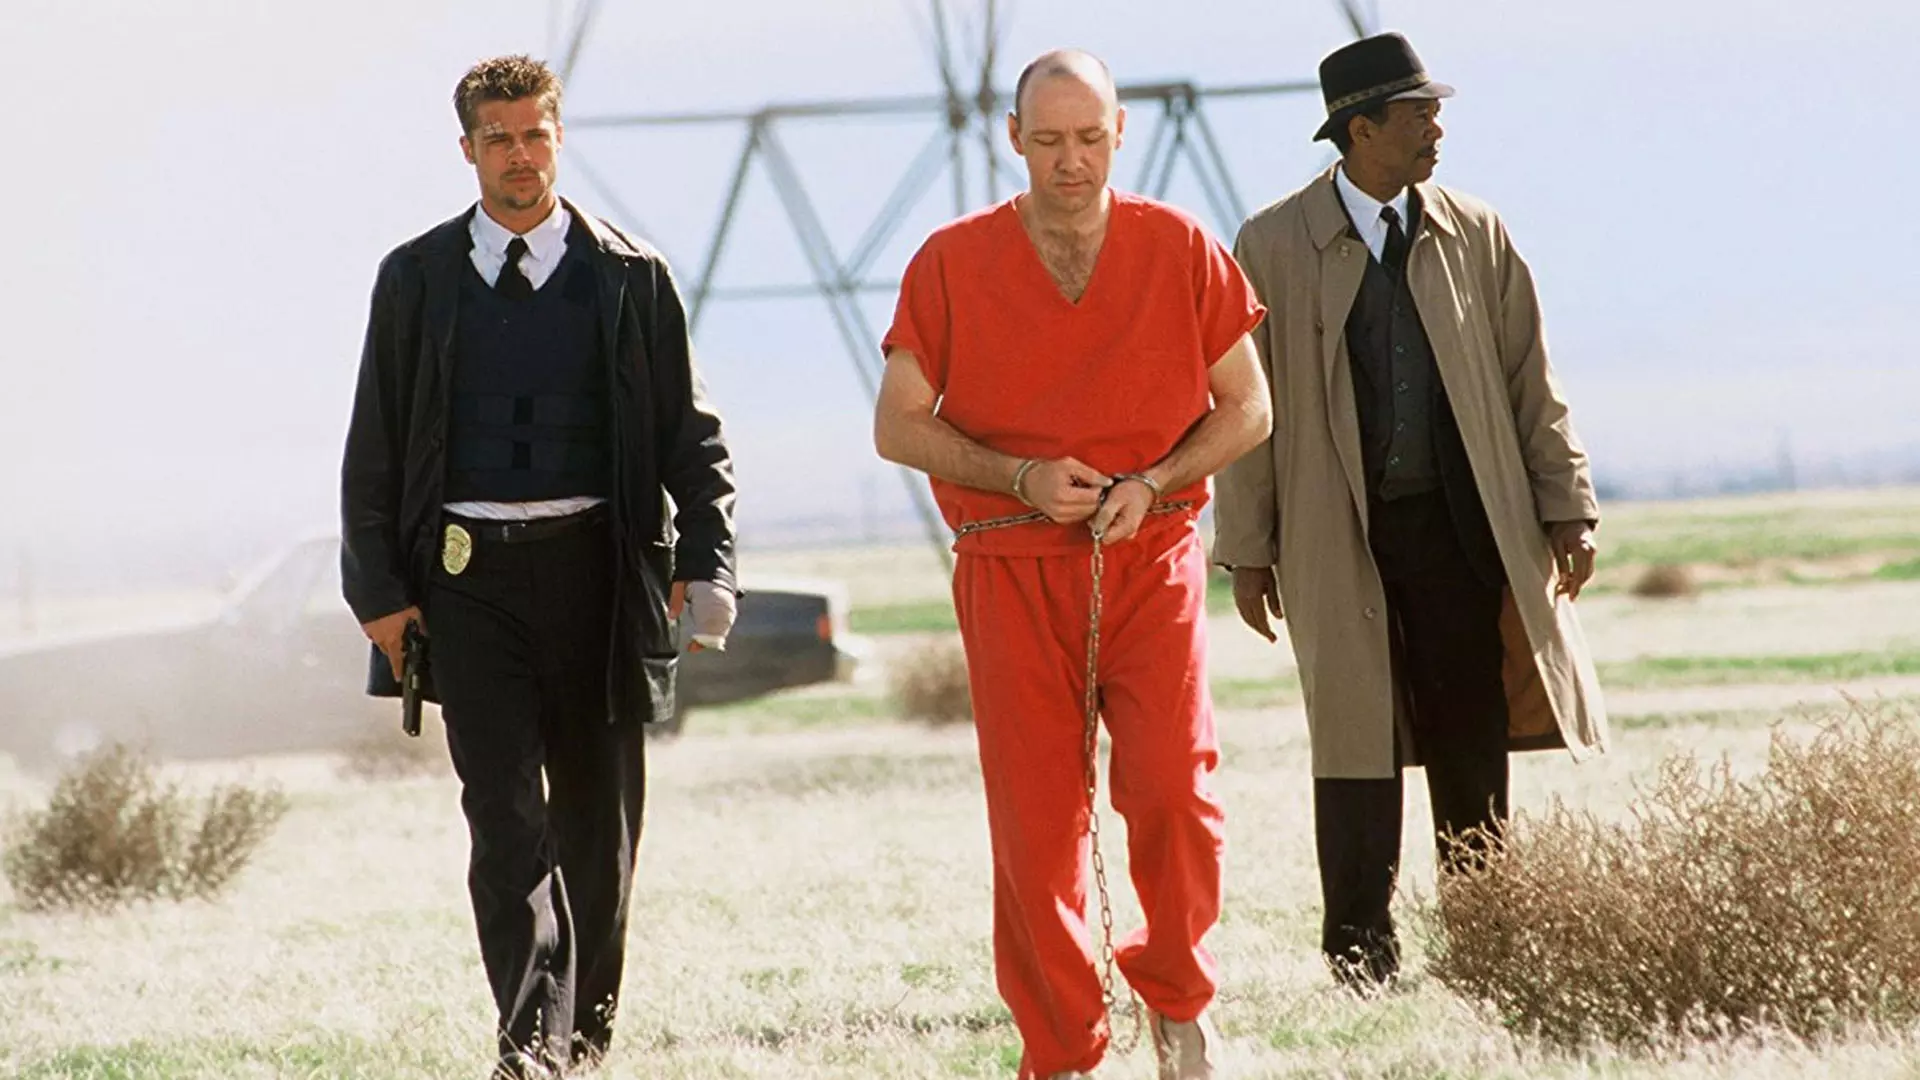 برد پیت و مورگان فریمن در بیابان به همراه یک زندانی در فیلم Se7en